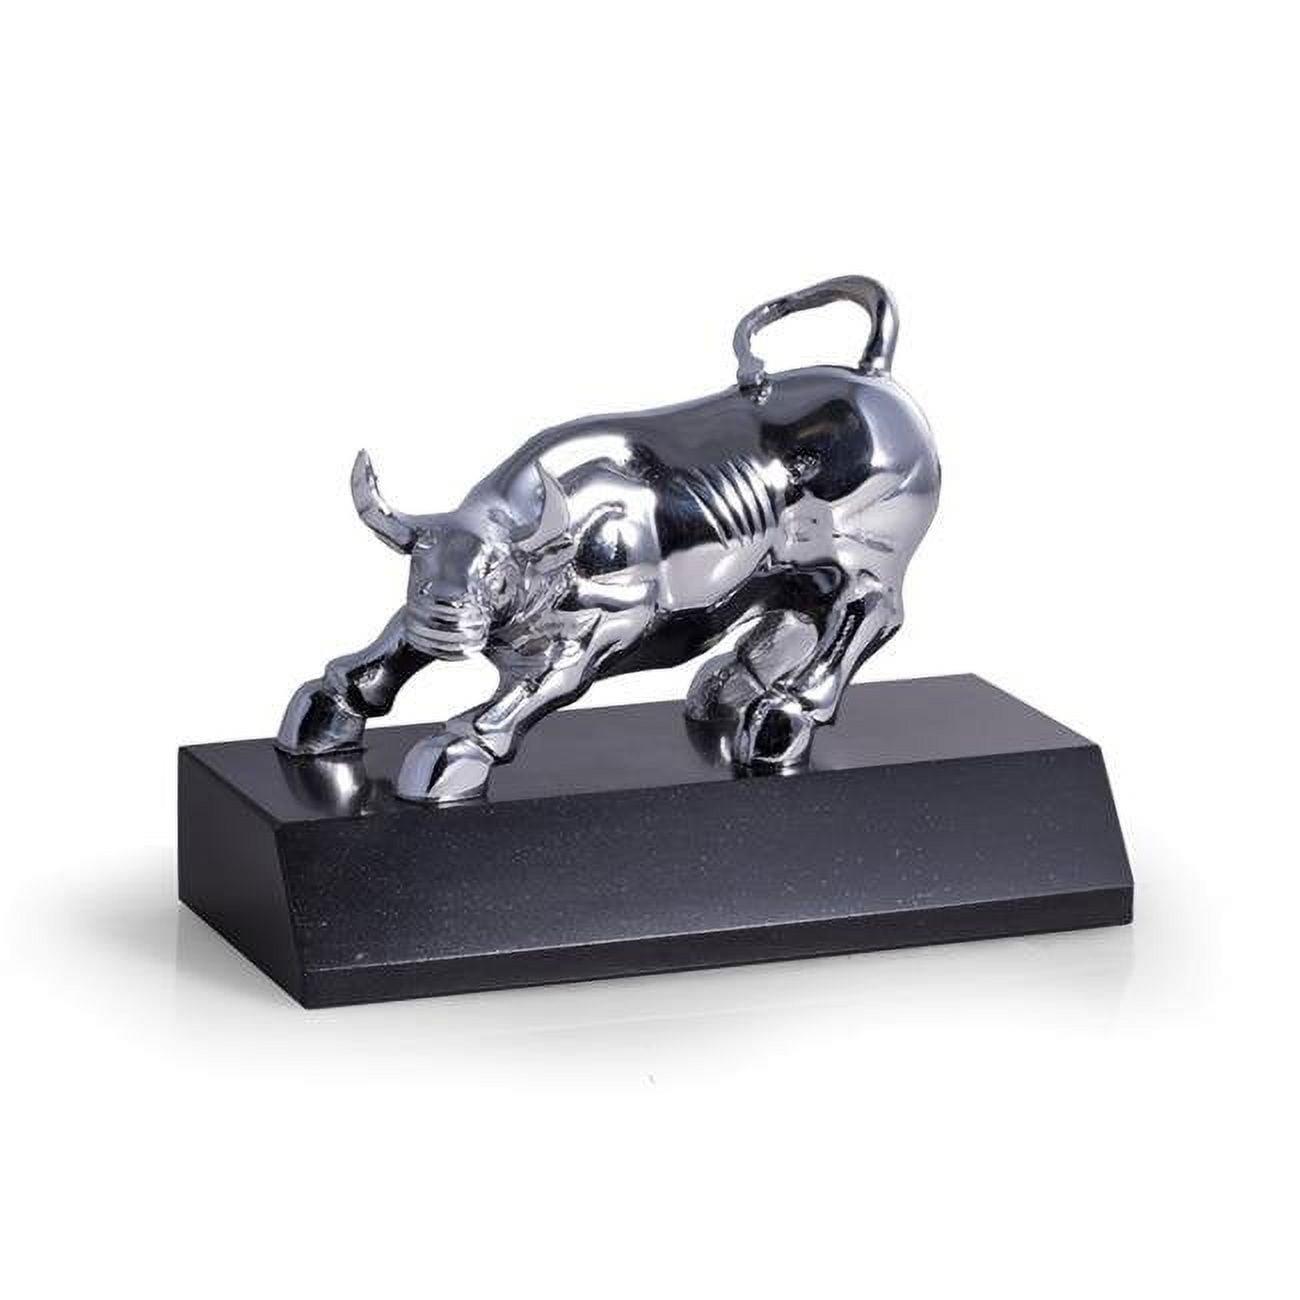 Bey-berk International D025s Chrome Plated Bull Sculpture On Black Marble Base, Black